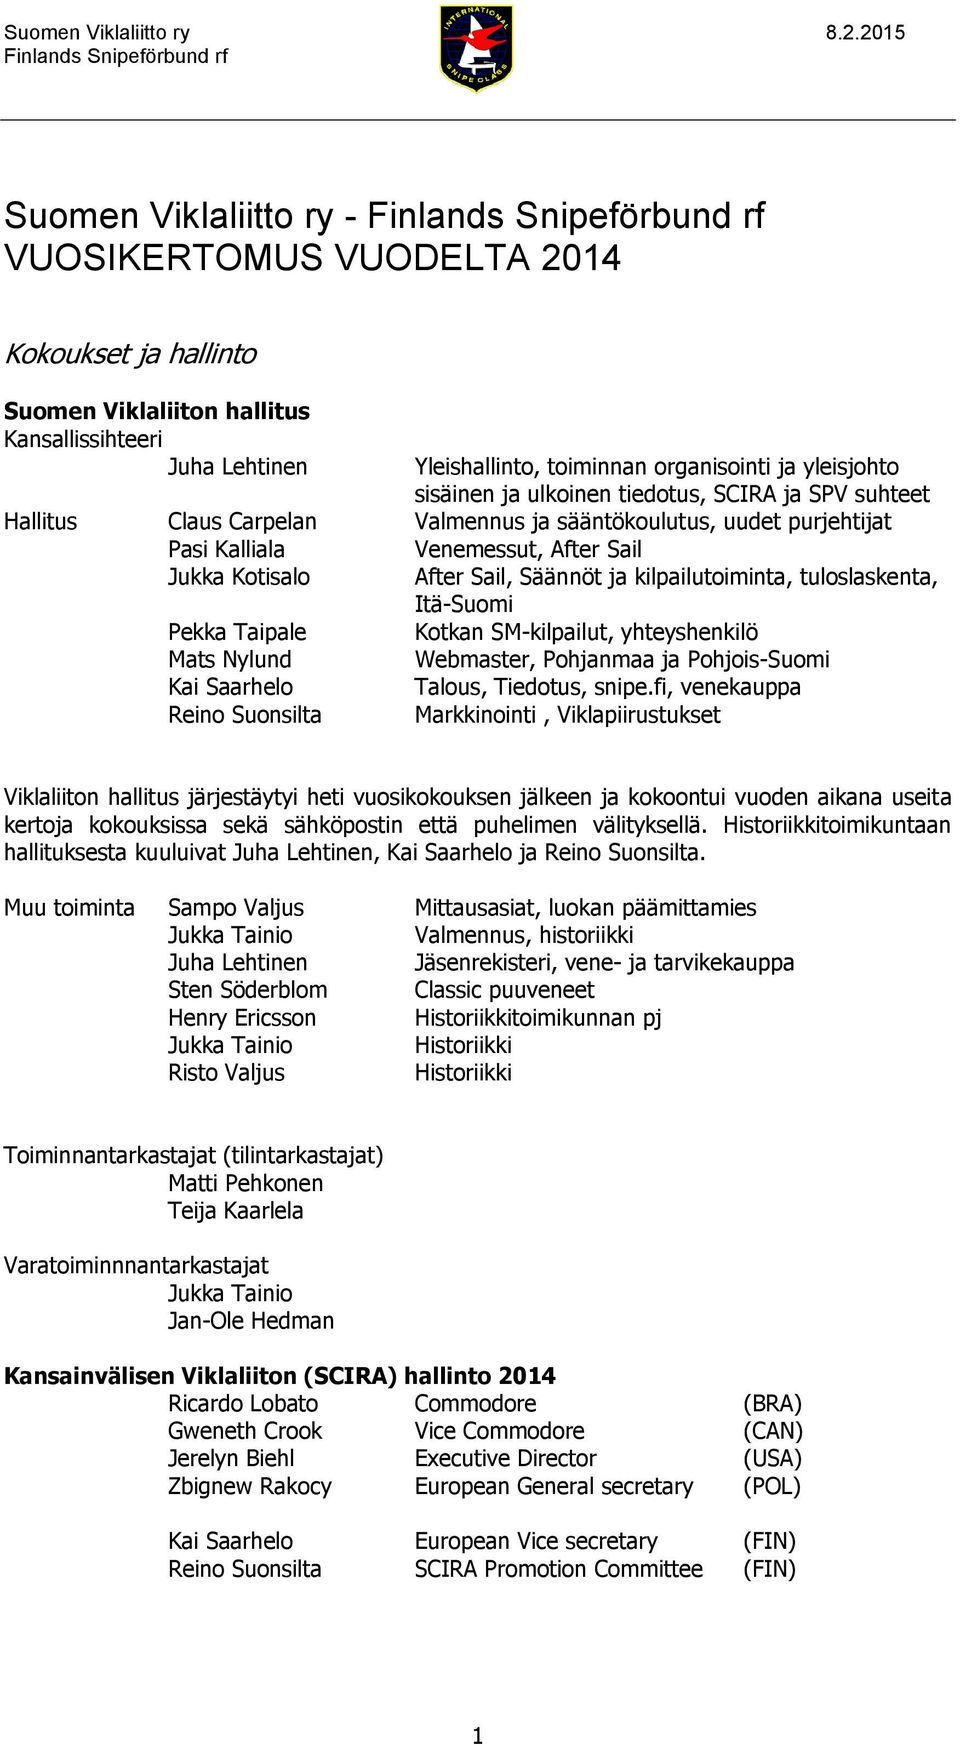 kilpailutoiminta, tuloslaskenta, Itä-Suomi Pekka Taipale Kotkan SM-kilpailut, yhteyshenkilö Mats Nylund Webmaster, Pohjanmaa ja Pohjois-Suomi Kai Saarhelo Talous, Tiedotus, snipe.